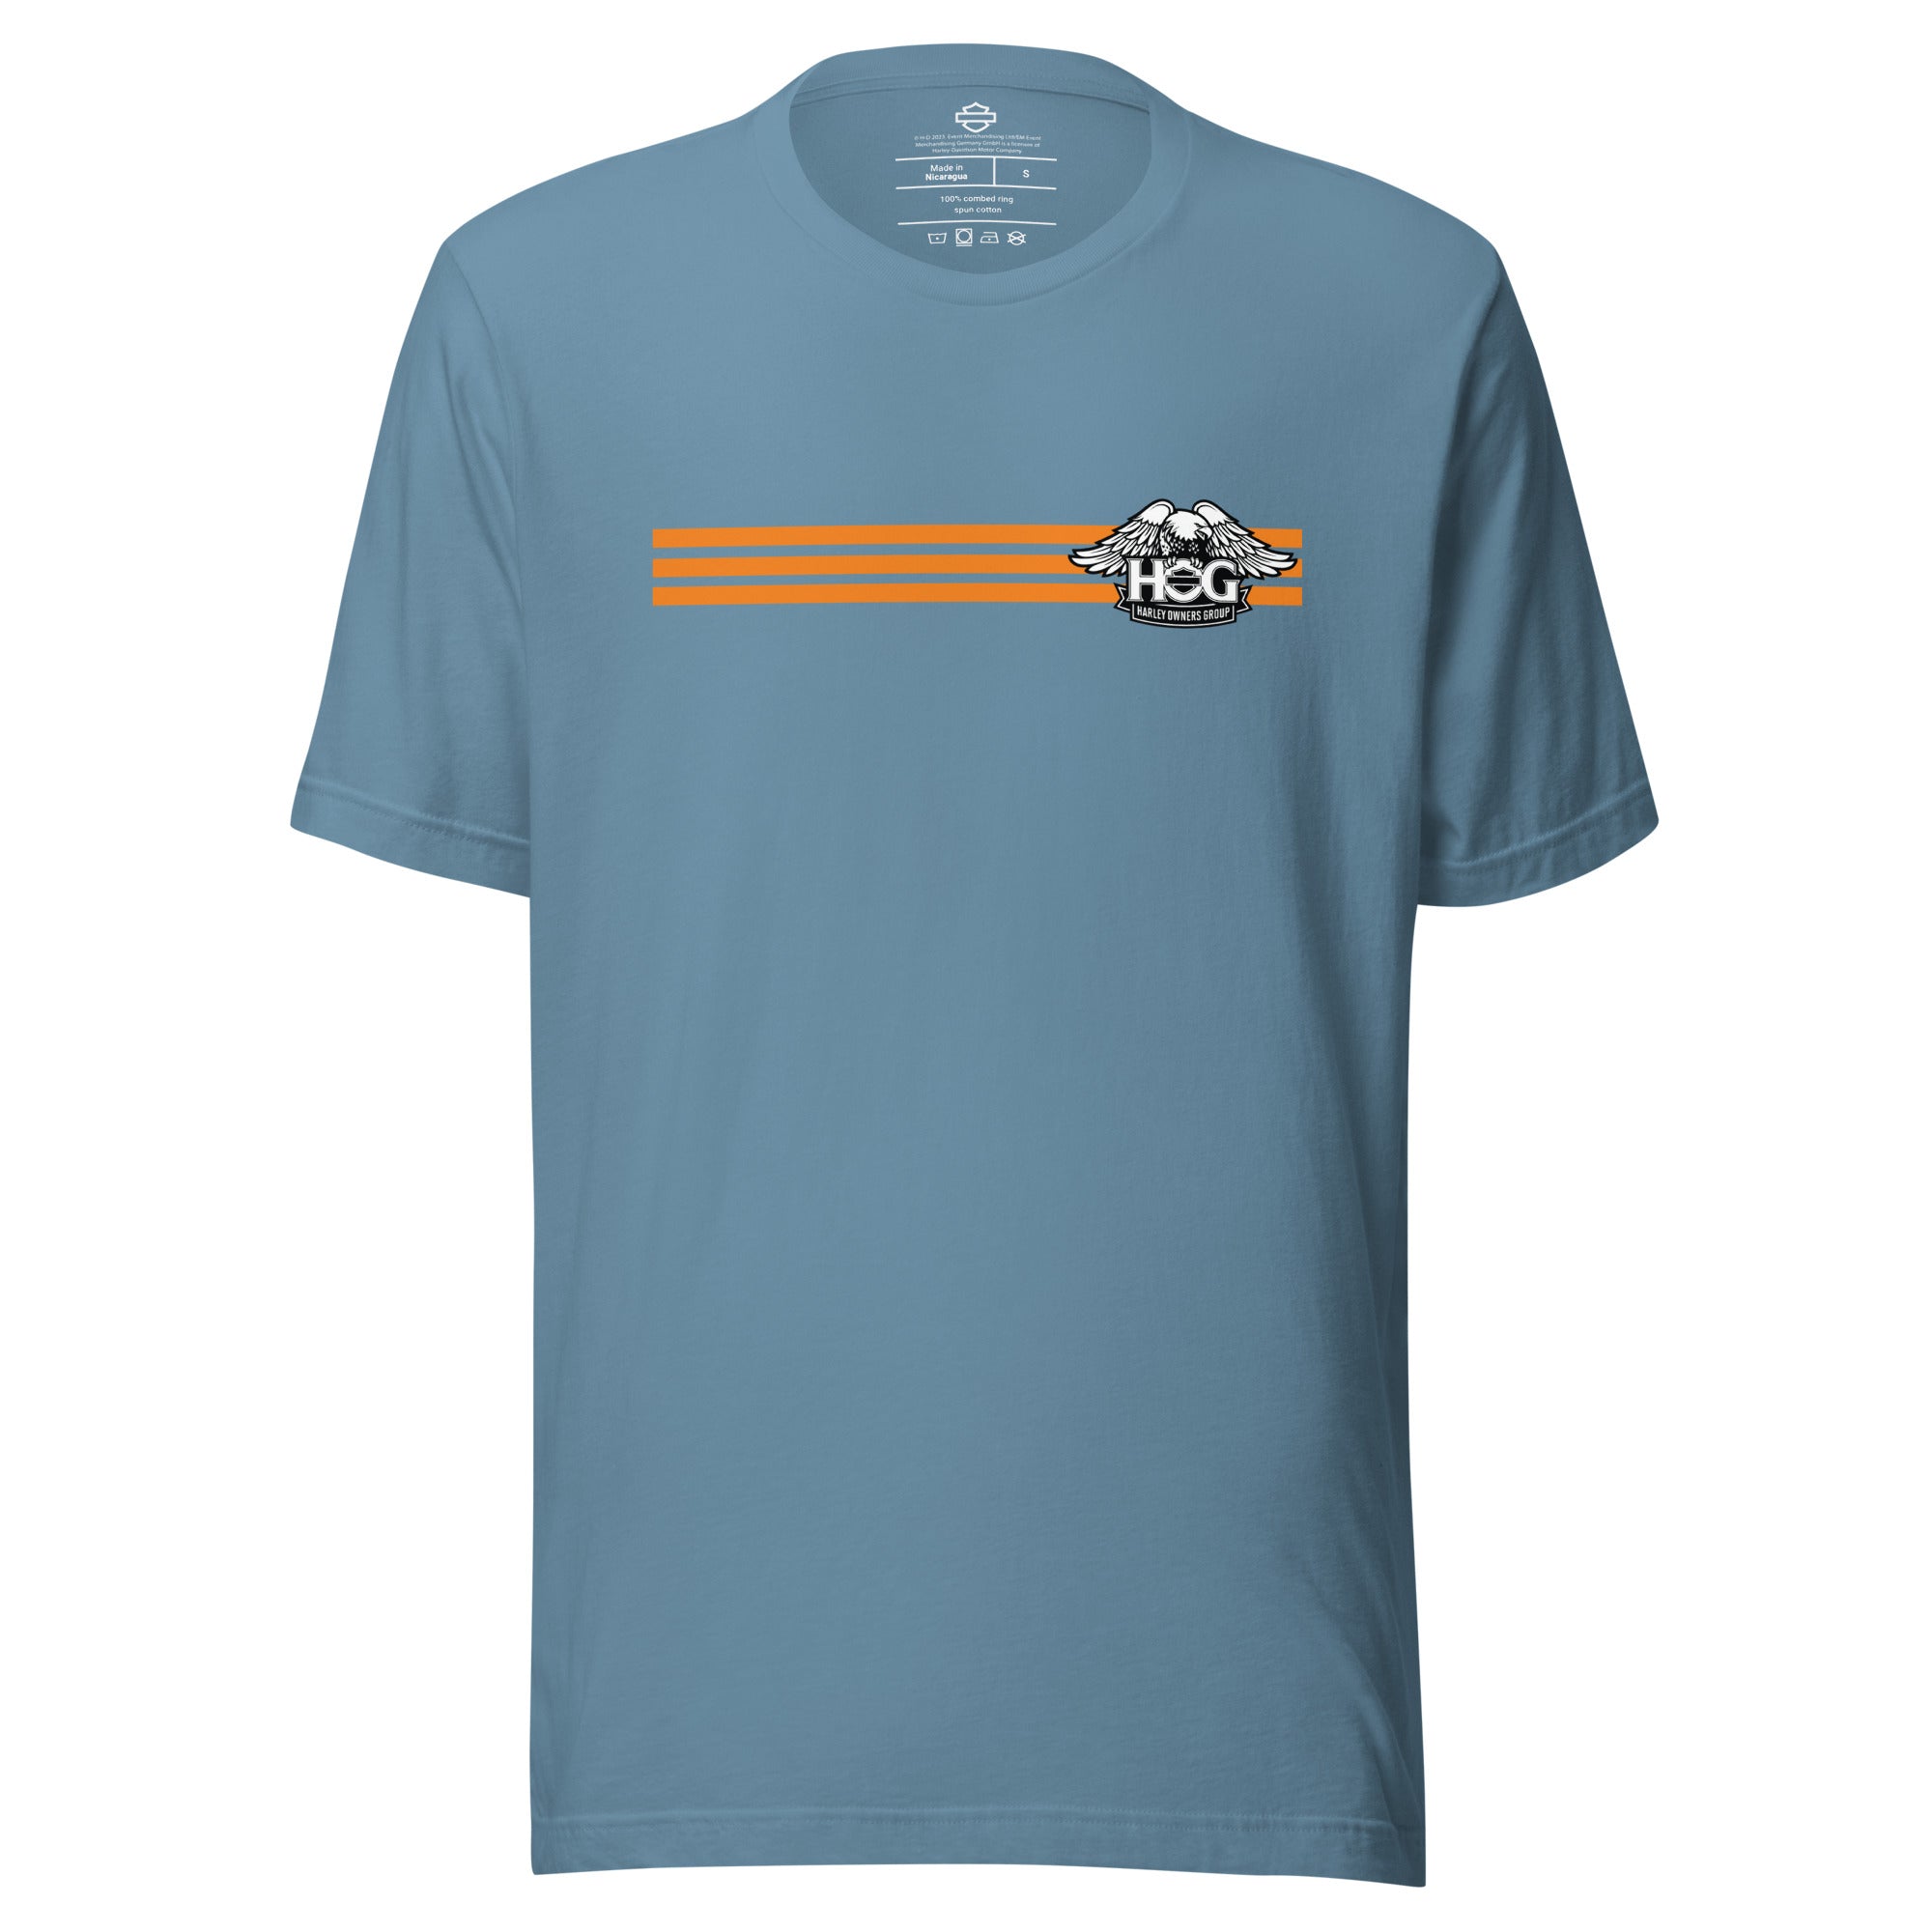 H.O.G. Racer Stripe Unisex T-Shirt